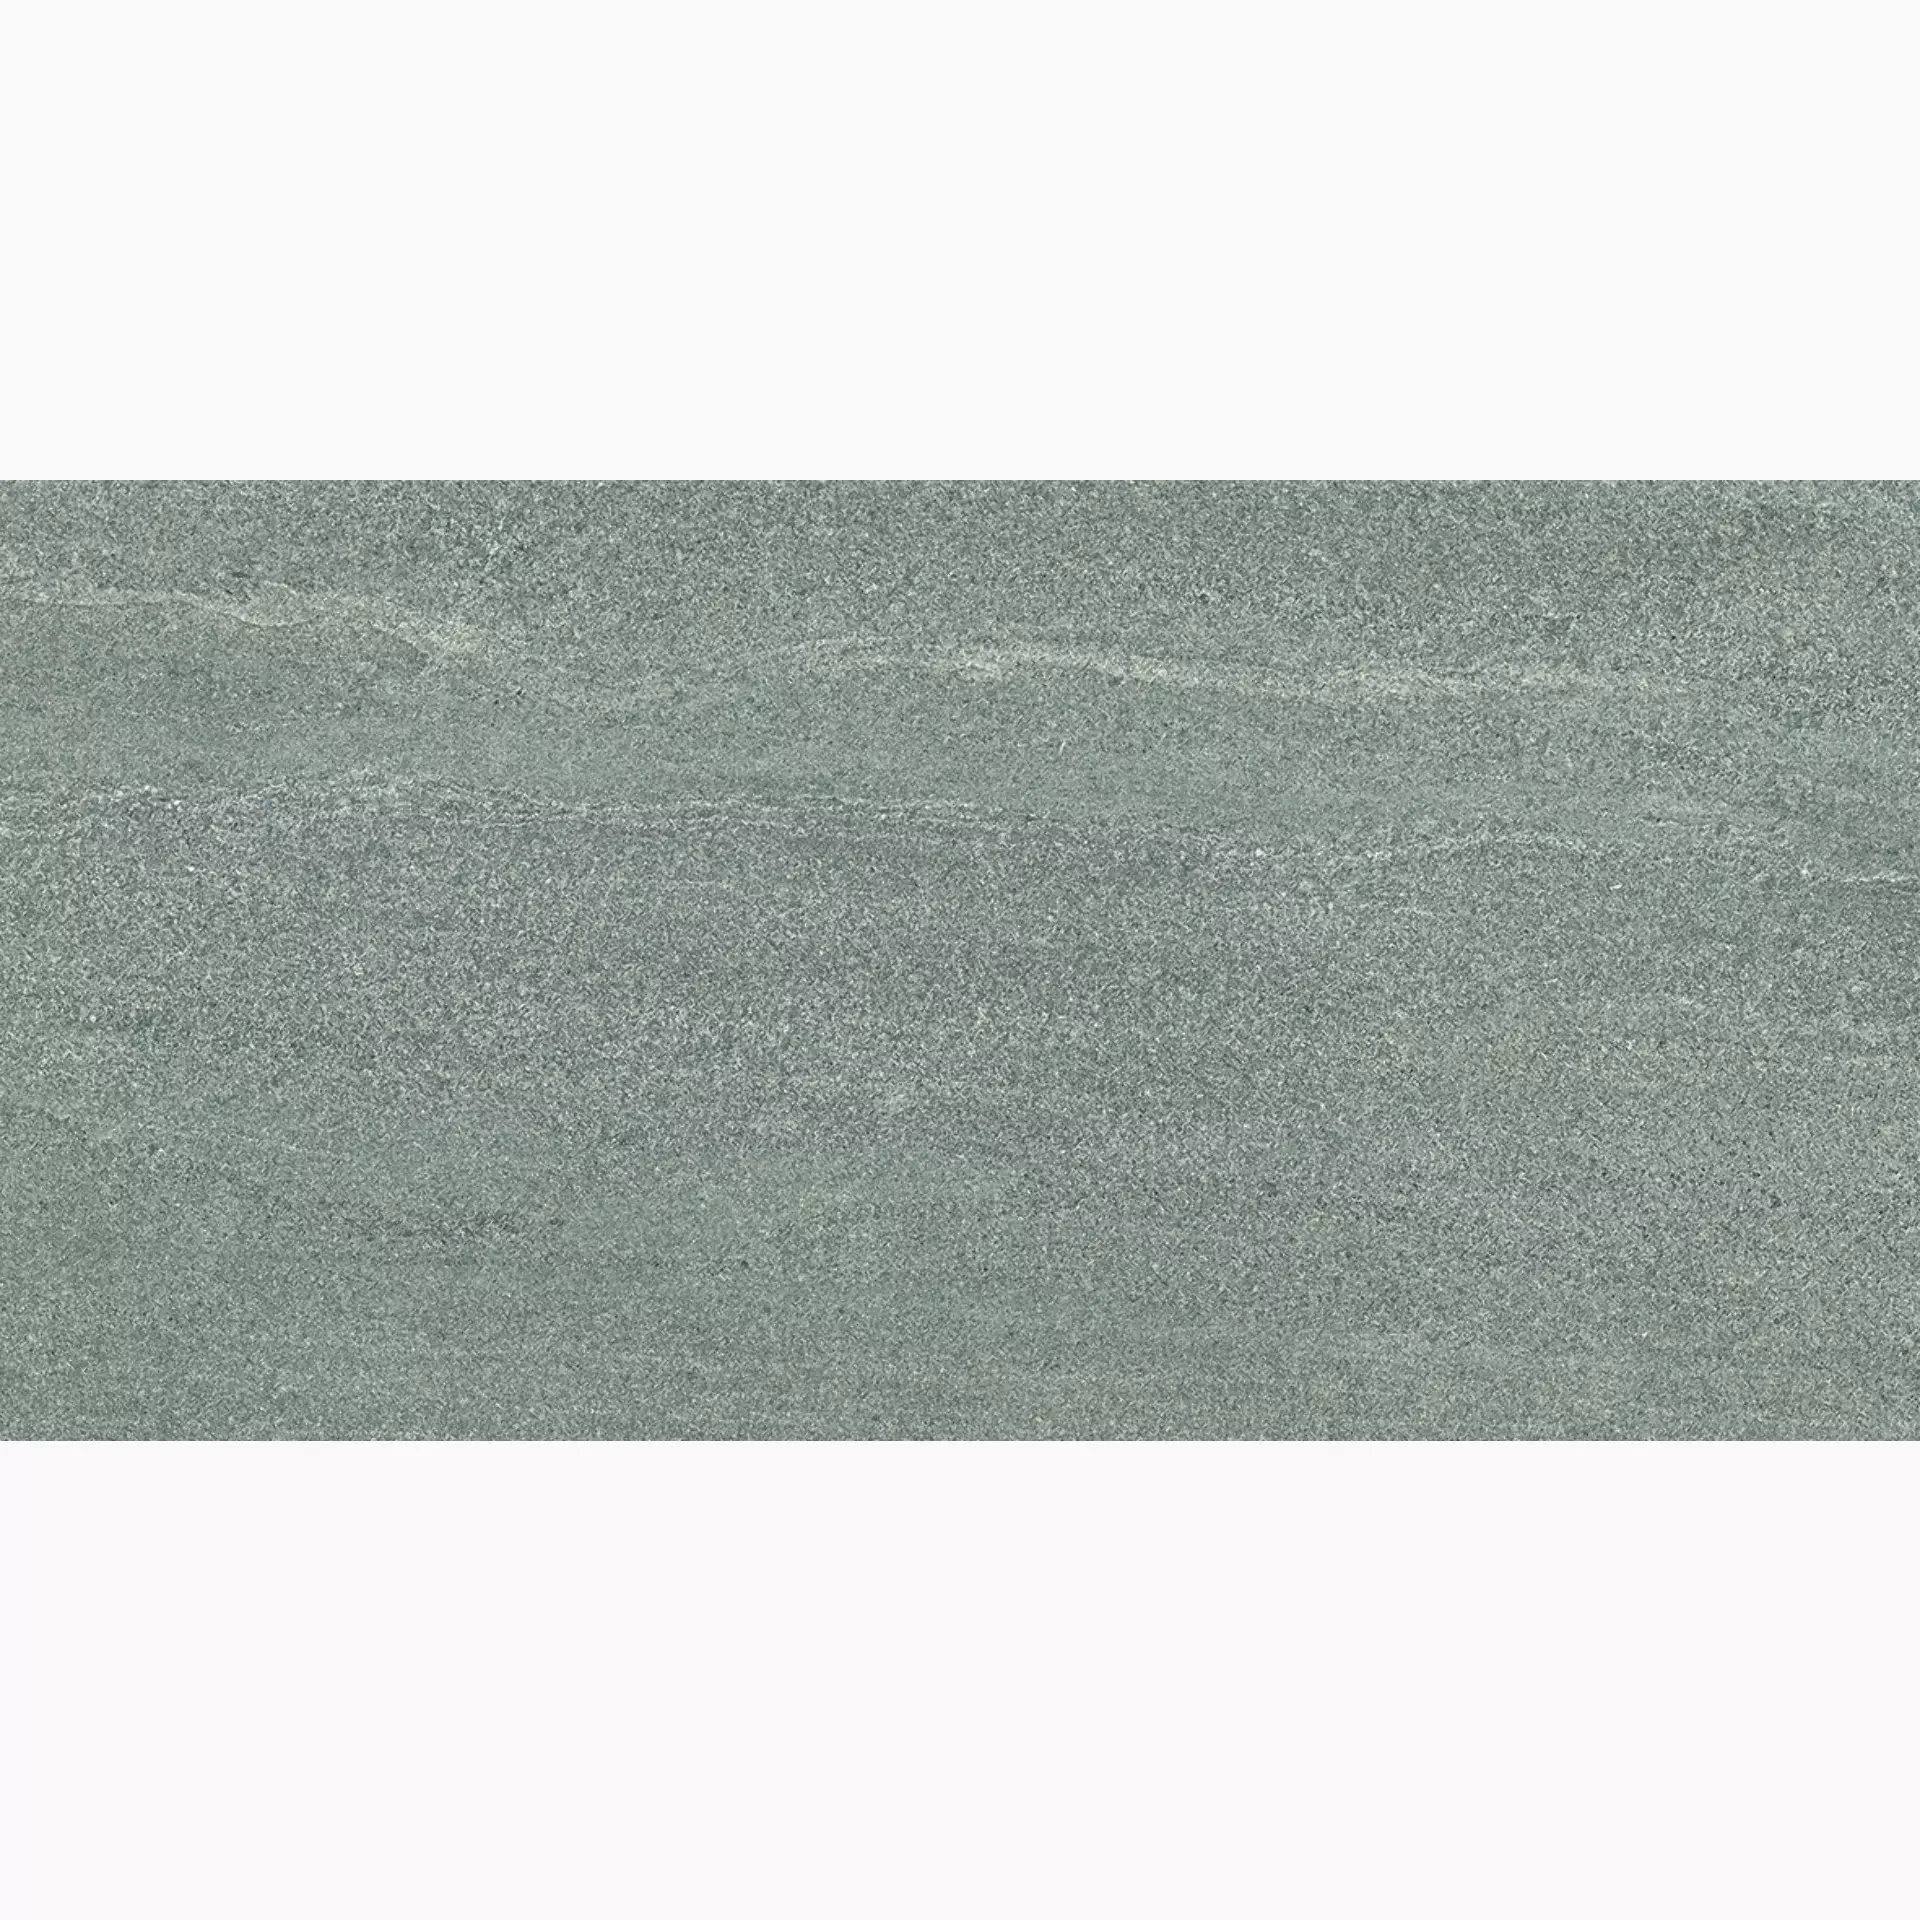 Ergon Elegance Pro Dark Grey Naturale Dark Grey EJZR natur 30x60cm rektifiziert 9,5mm